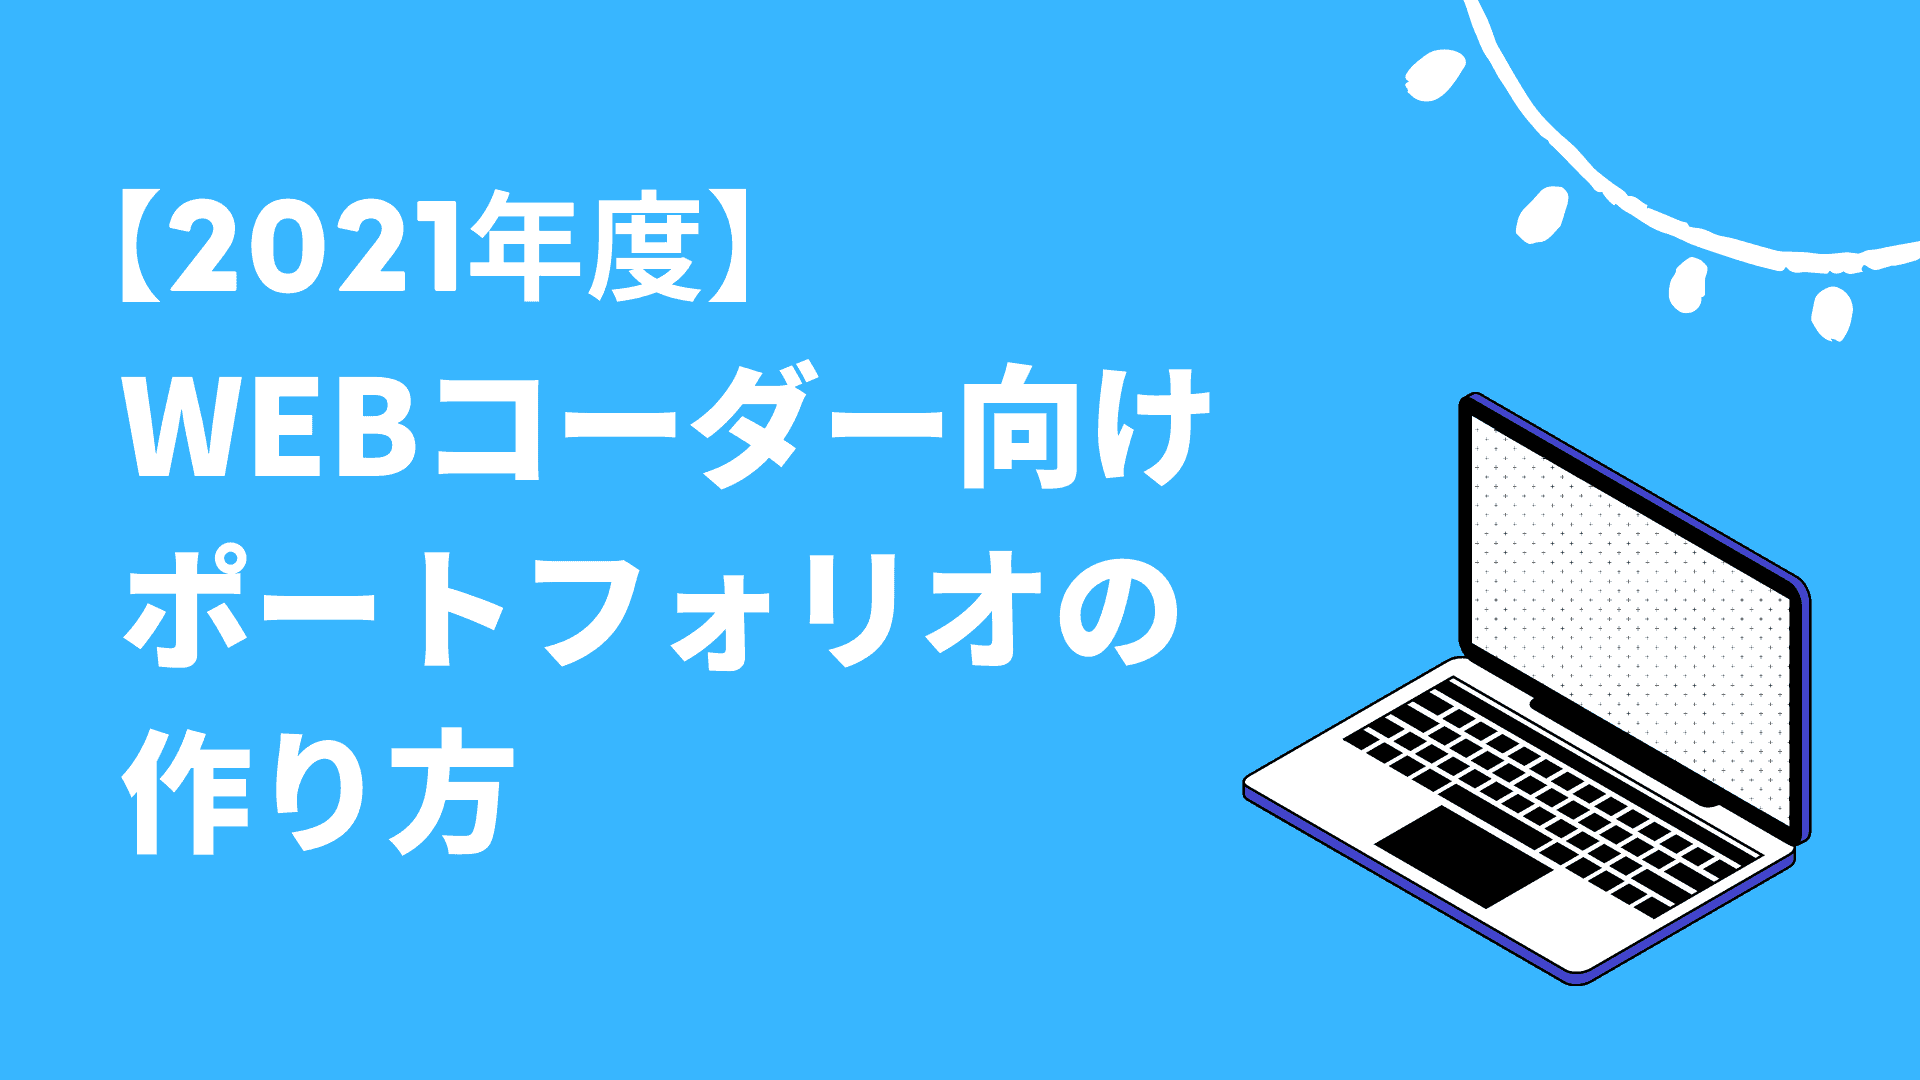 21年版 Web制作 コーダー向け で今すぐ実践できるポートフォリオの作り方を徹底解説 東京フリーランス